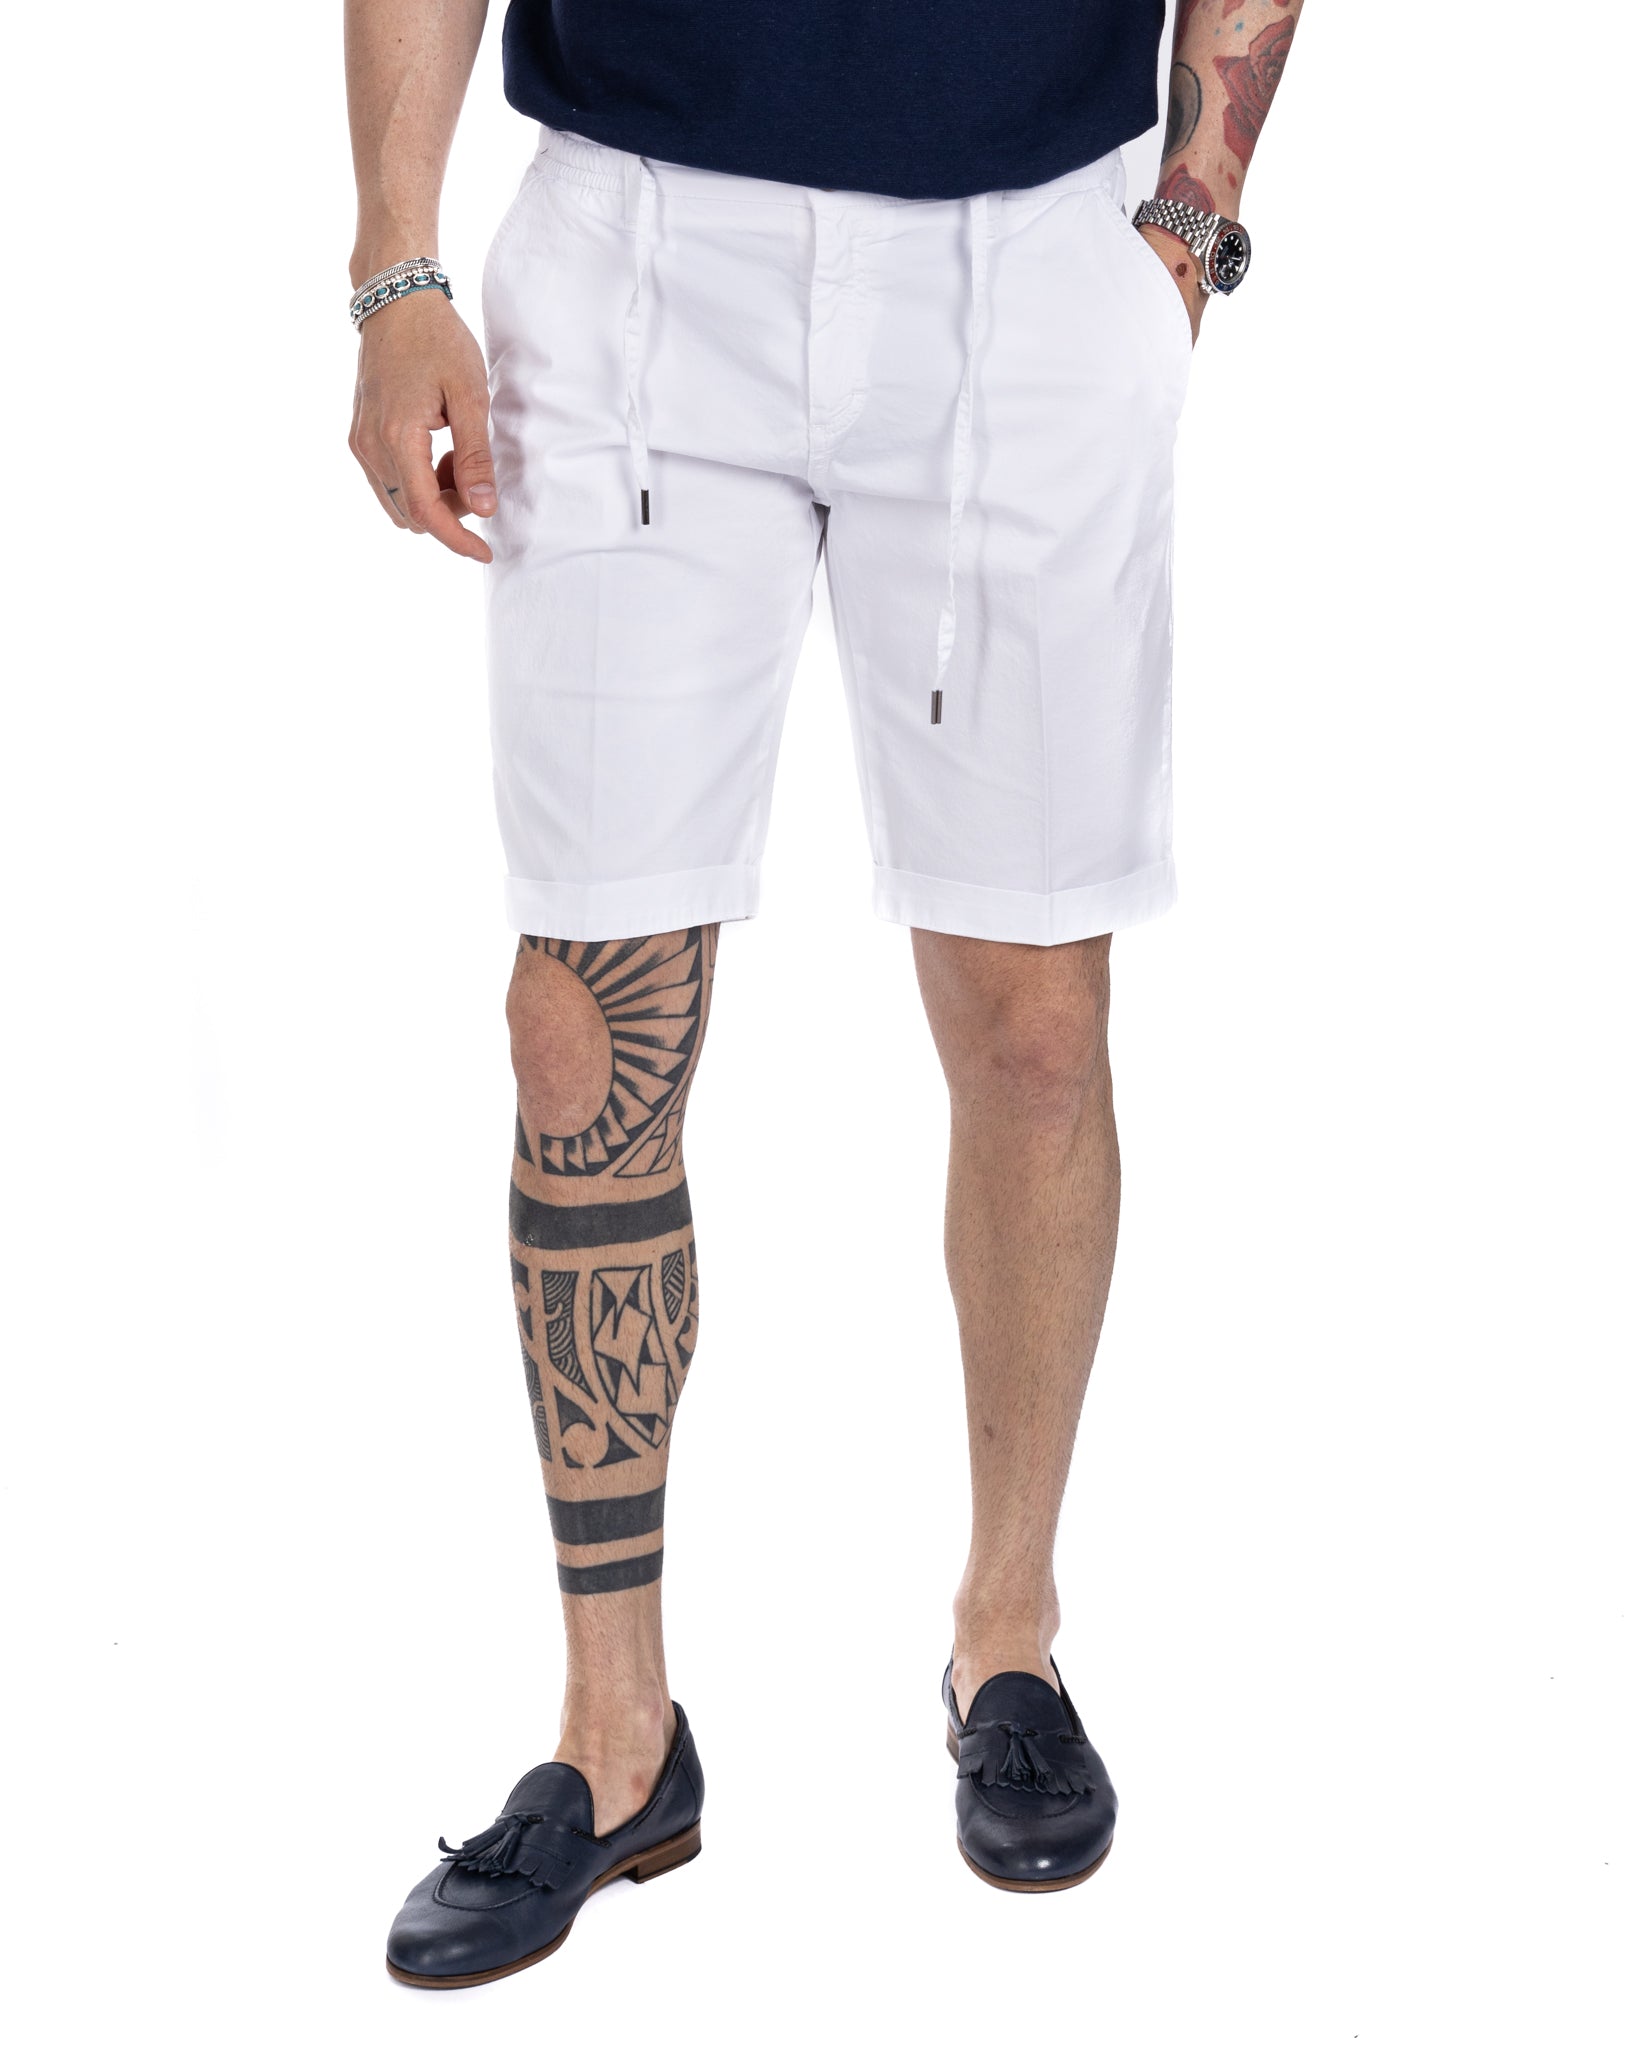 Barbuda - white cotton Bermuda shorts